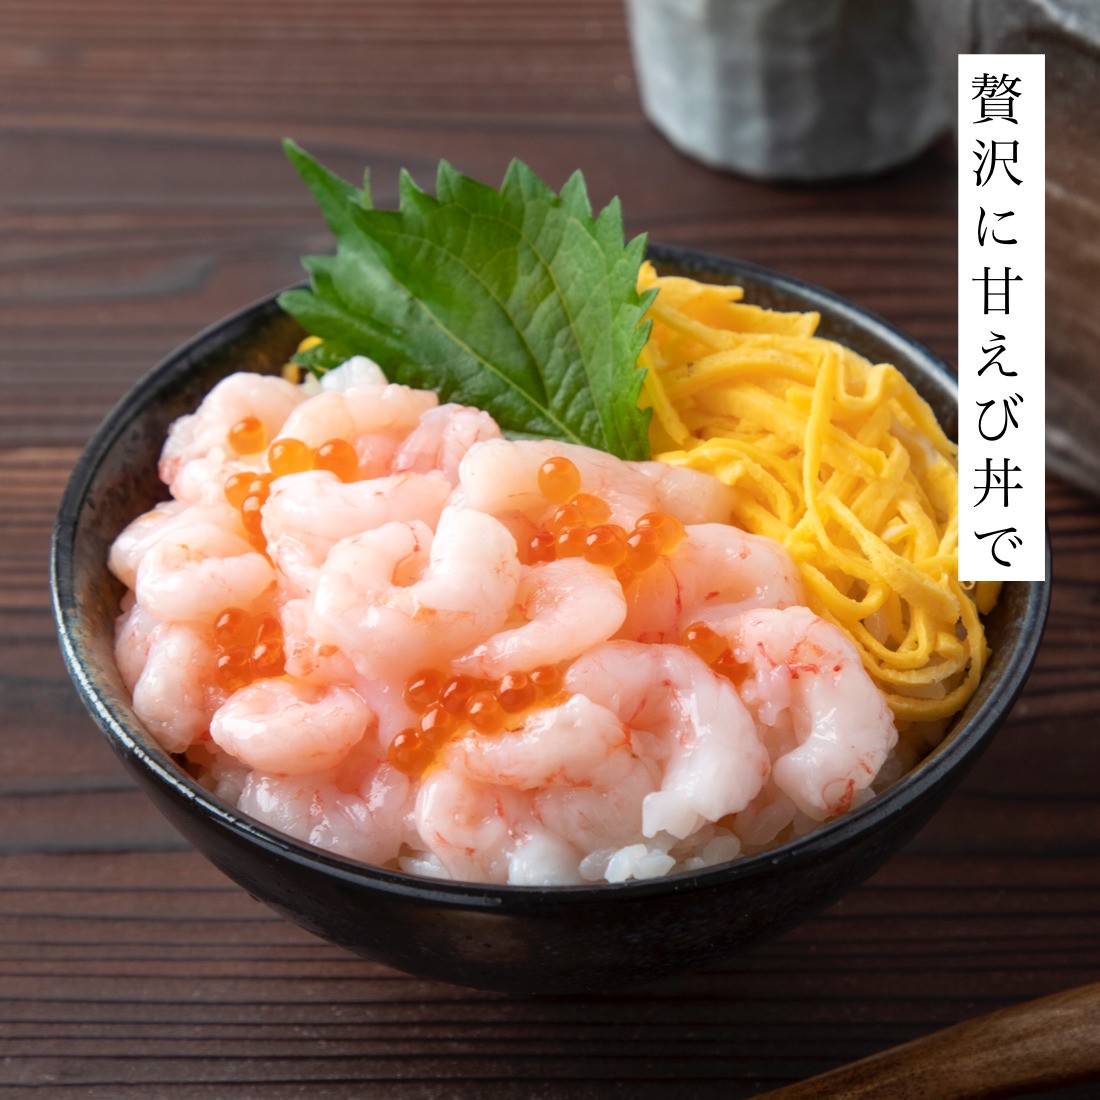 o sashimi ....... нет 200g×2 пакет sashimi ....... северная креветка .. креветка ...... море .. море . море ... морепродукты [C рассылка : рефрижератор ]